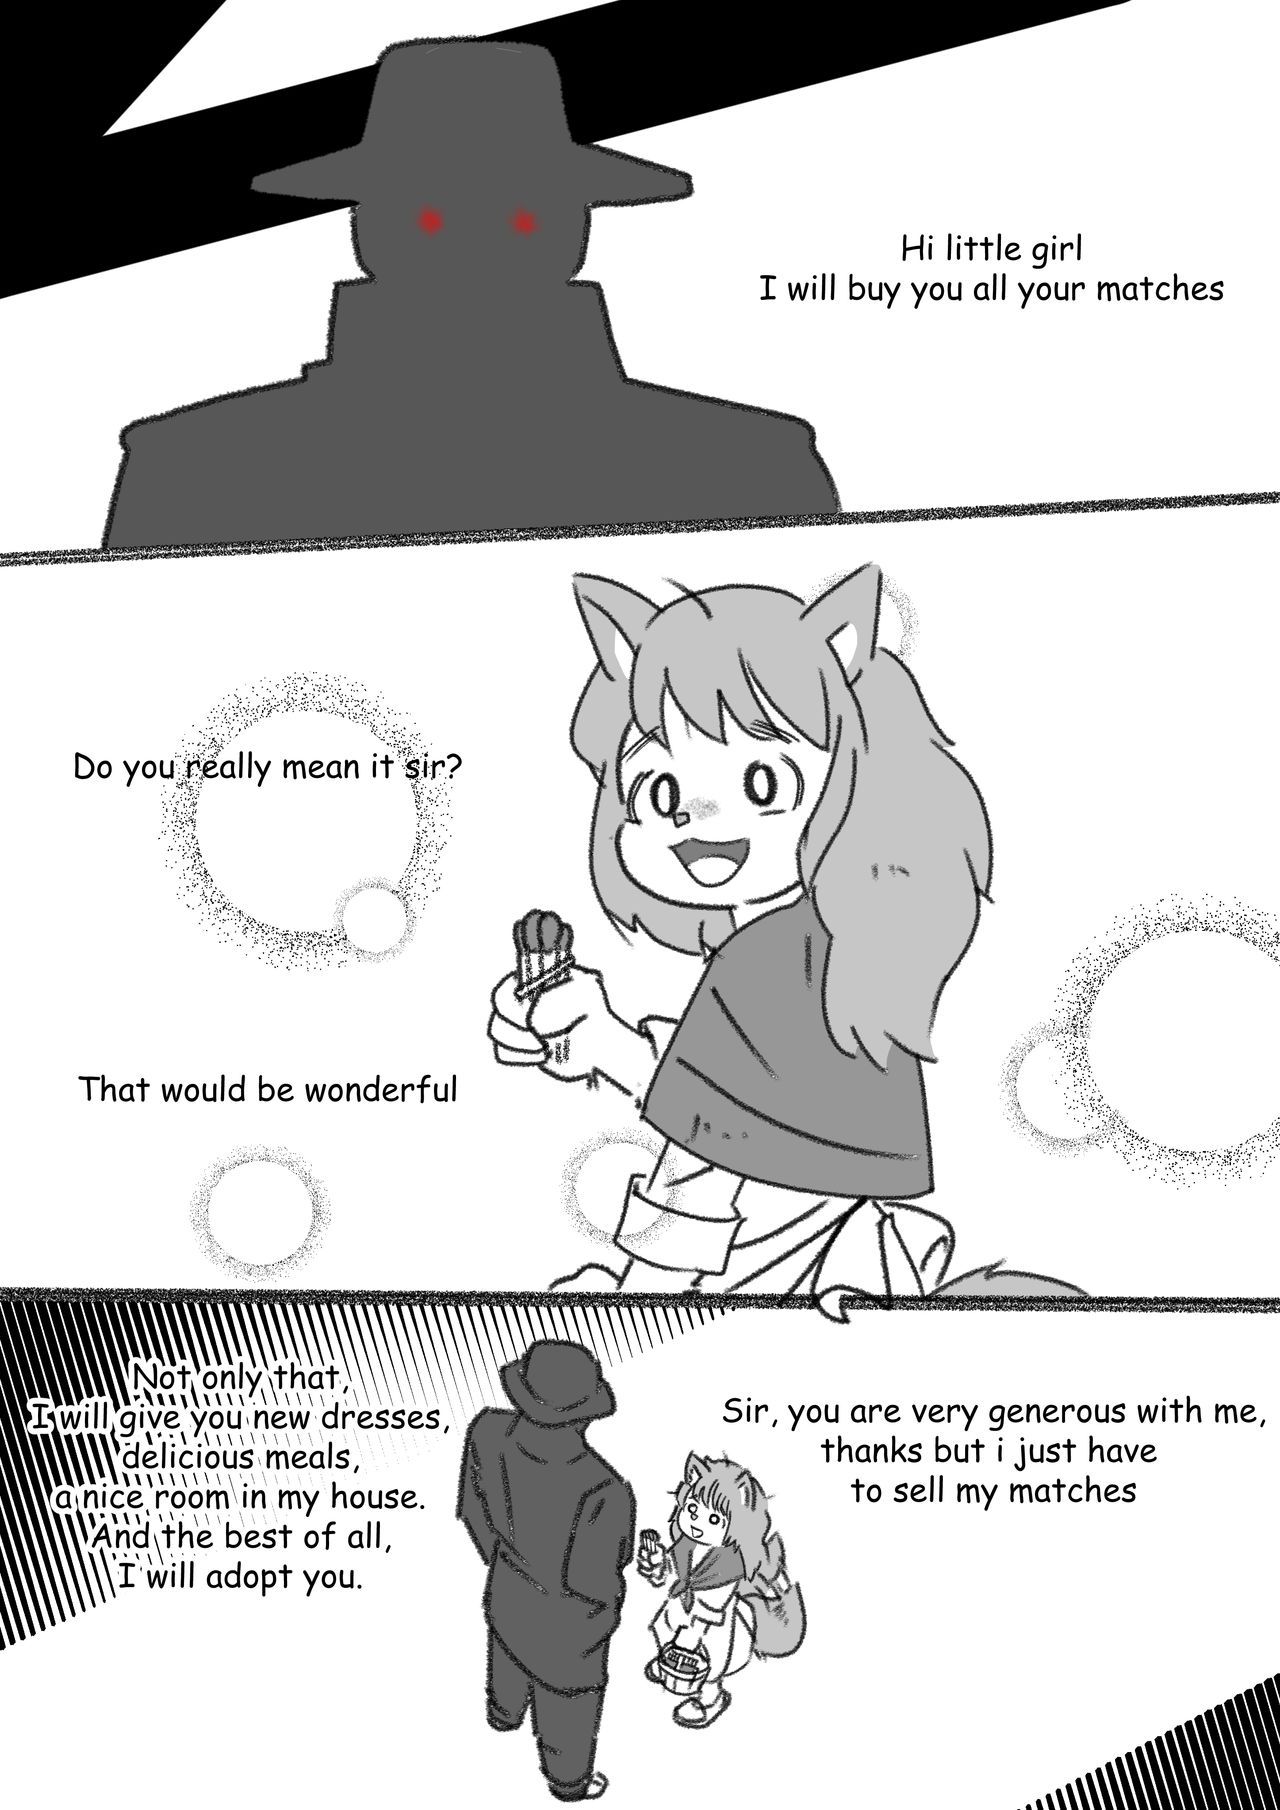 [iZu-Art] The Little Match Girl: Fur Edition (Fur Just Wanna Be Friend) (Ongoing) 4